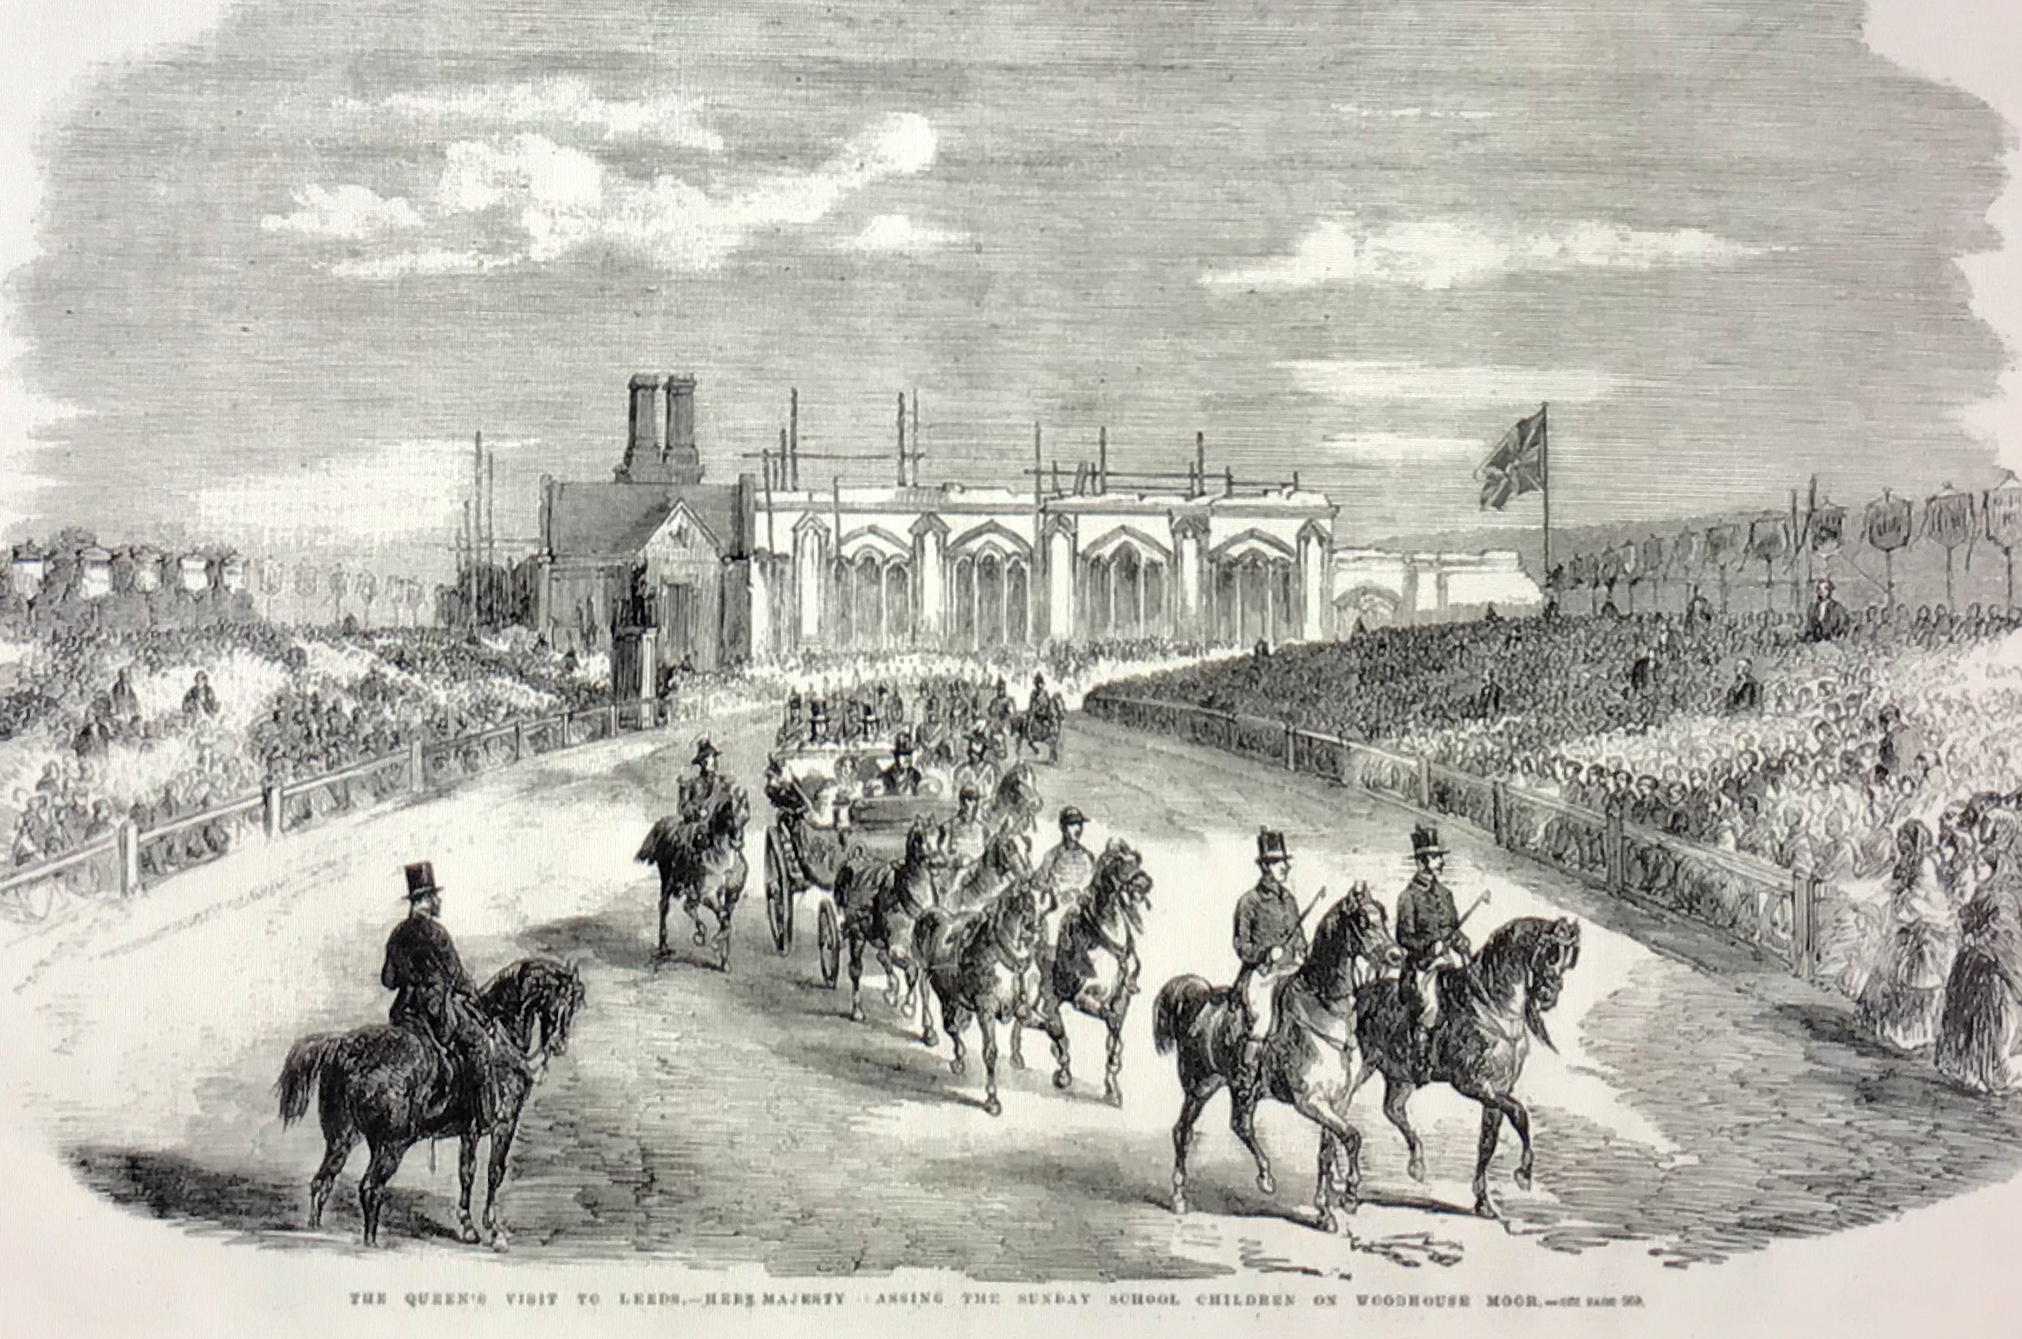 Queen Victoria Visits Woodhouse Moor in 1858